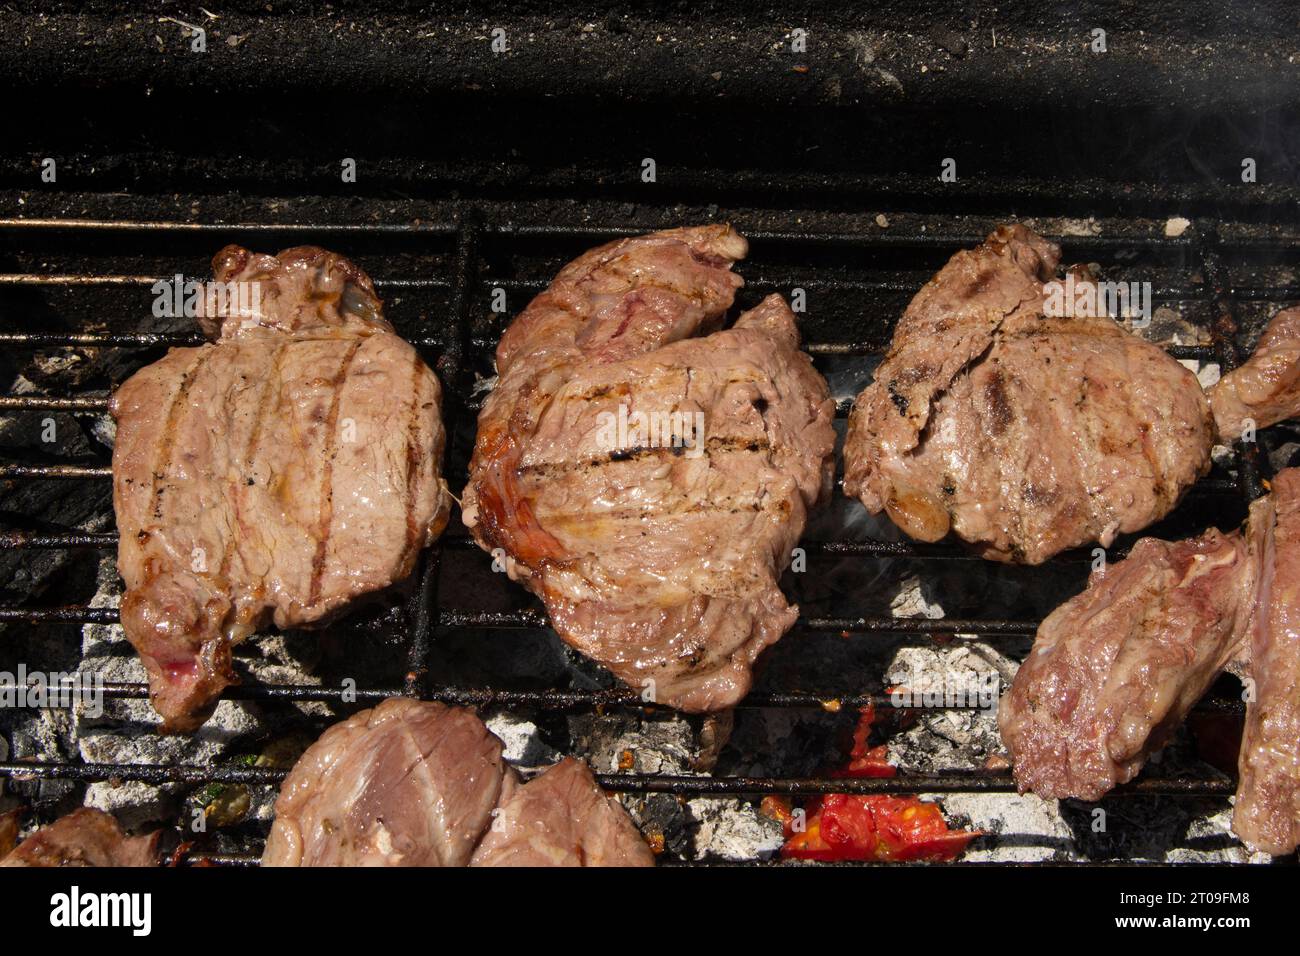 Carne de barbacoa Stock Photo